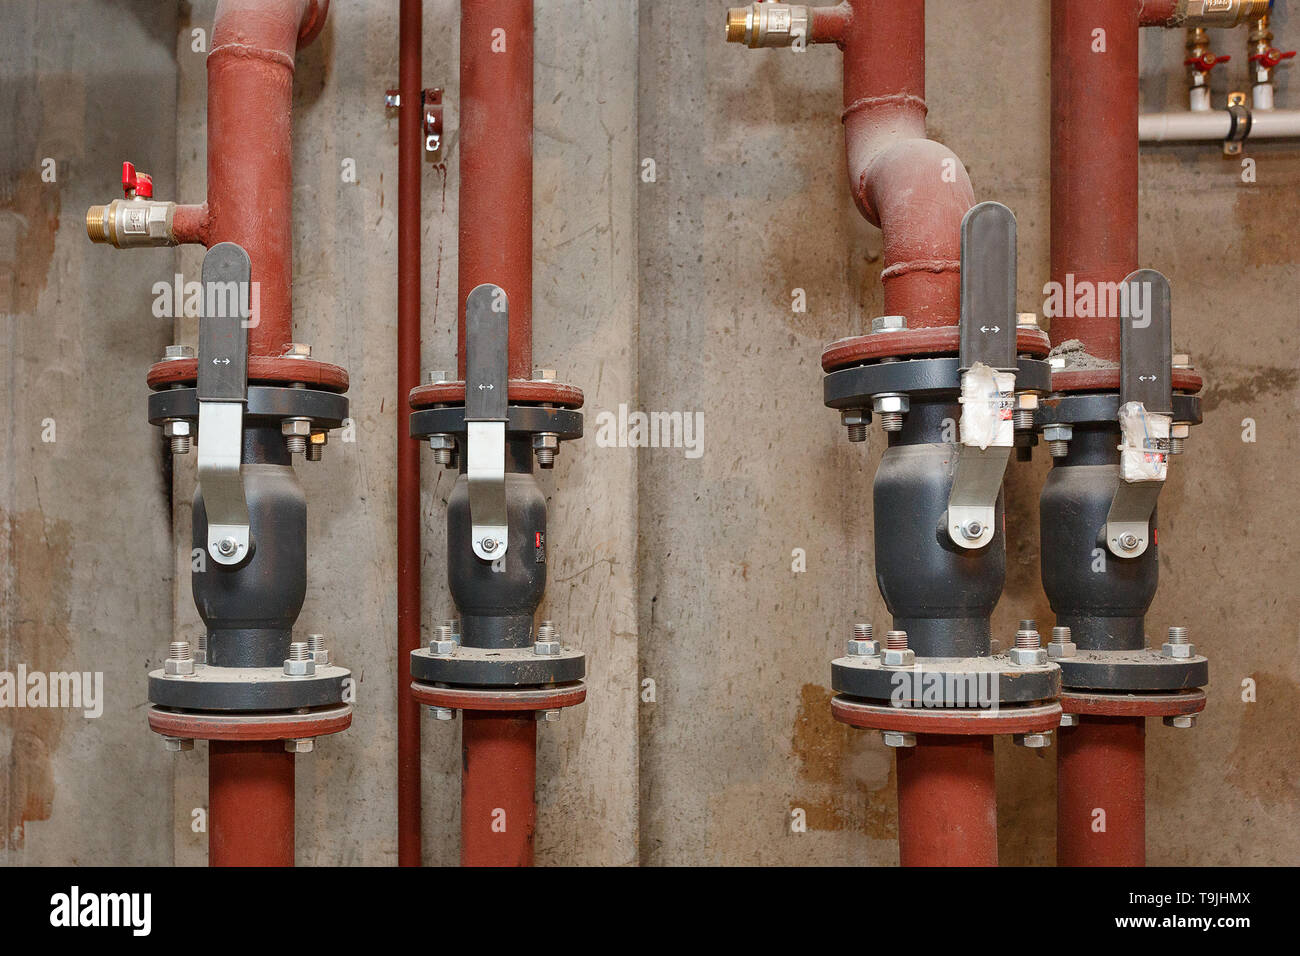 Manometer-Wasserdruckmesser in Der Heizwanne. Stockfoto - Bild von gatter,  heizung: 215265272